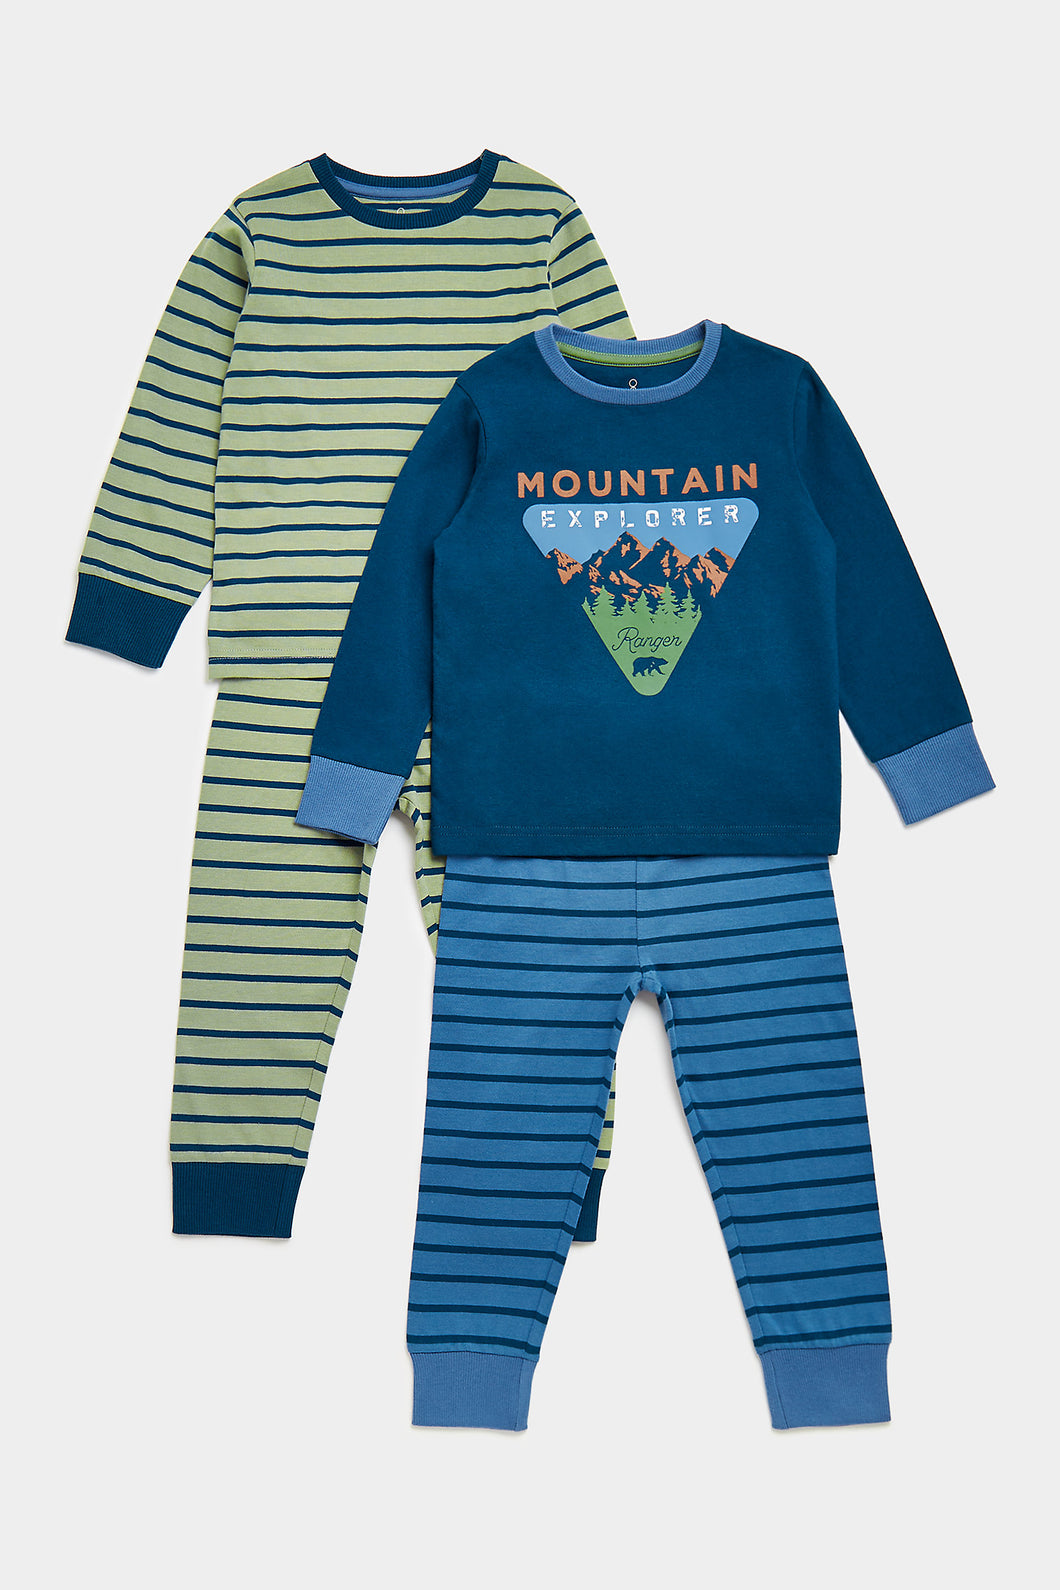 Mothercare Mountain Explorer Pyjamas - 2 Pack